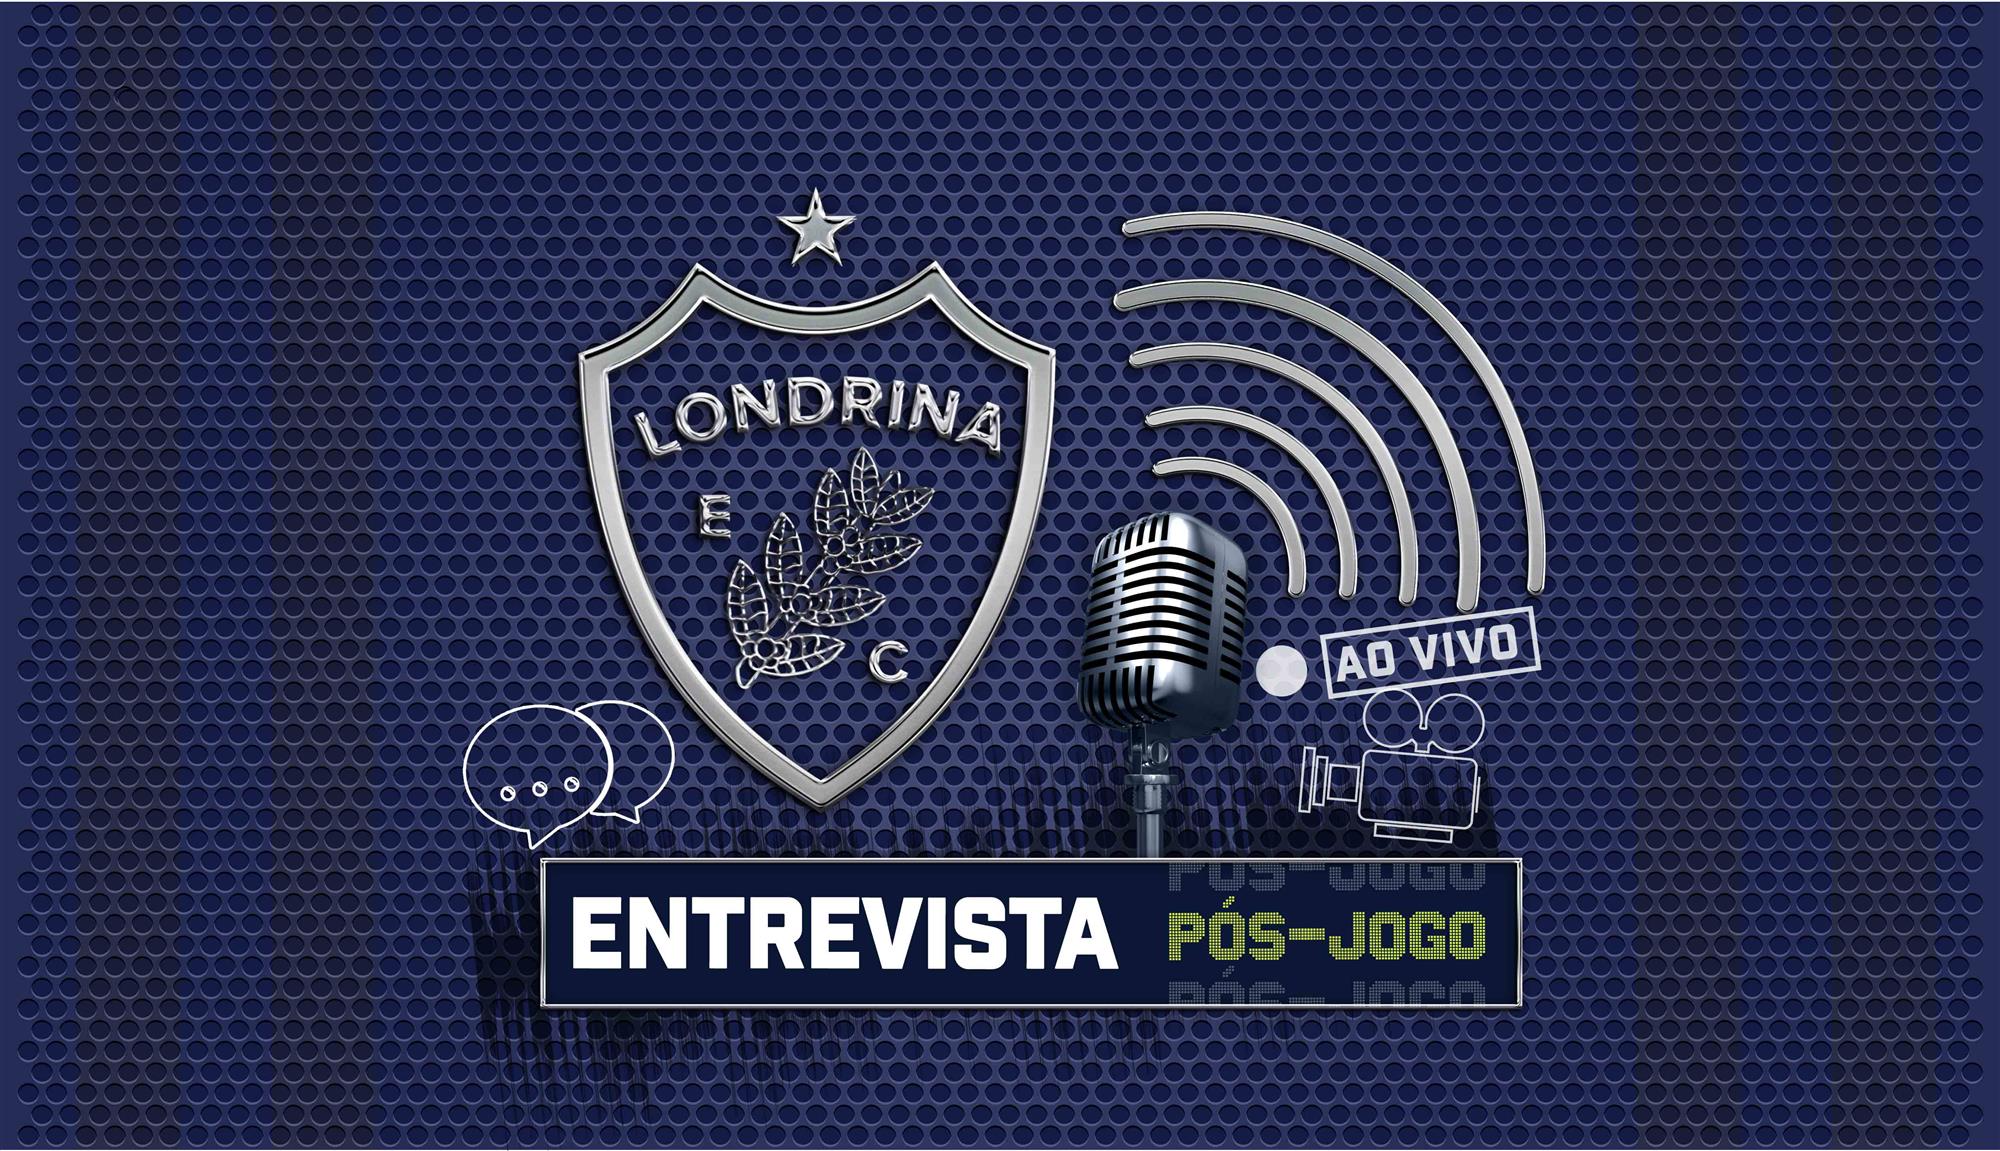 Pós-jogo: Acompanhe ao vivo as entrevista após Londrina 1x0 Ituano